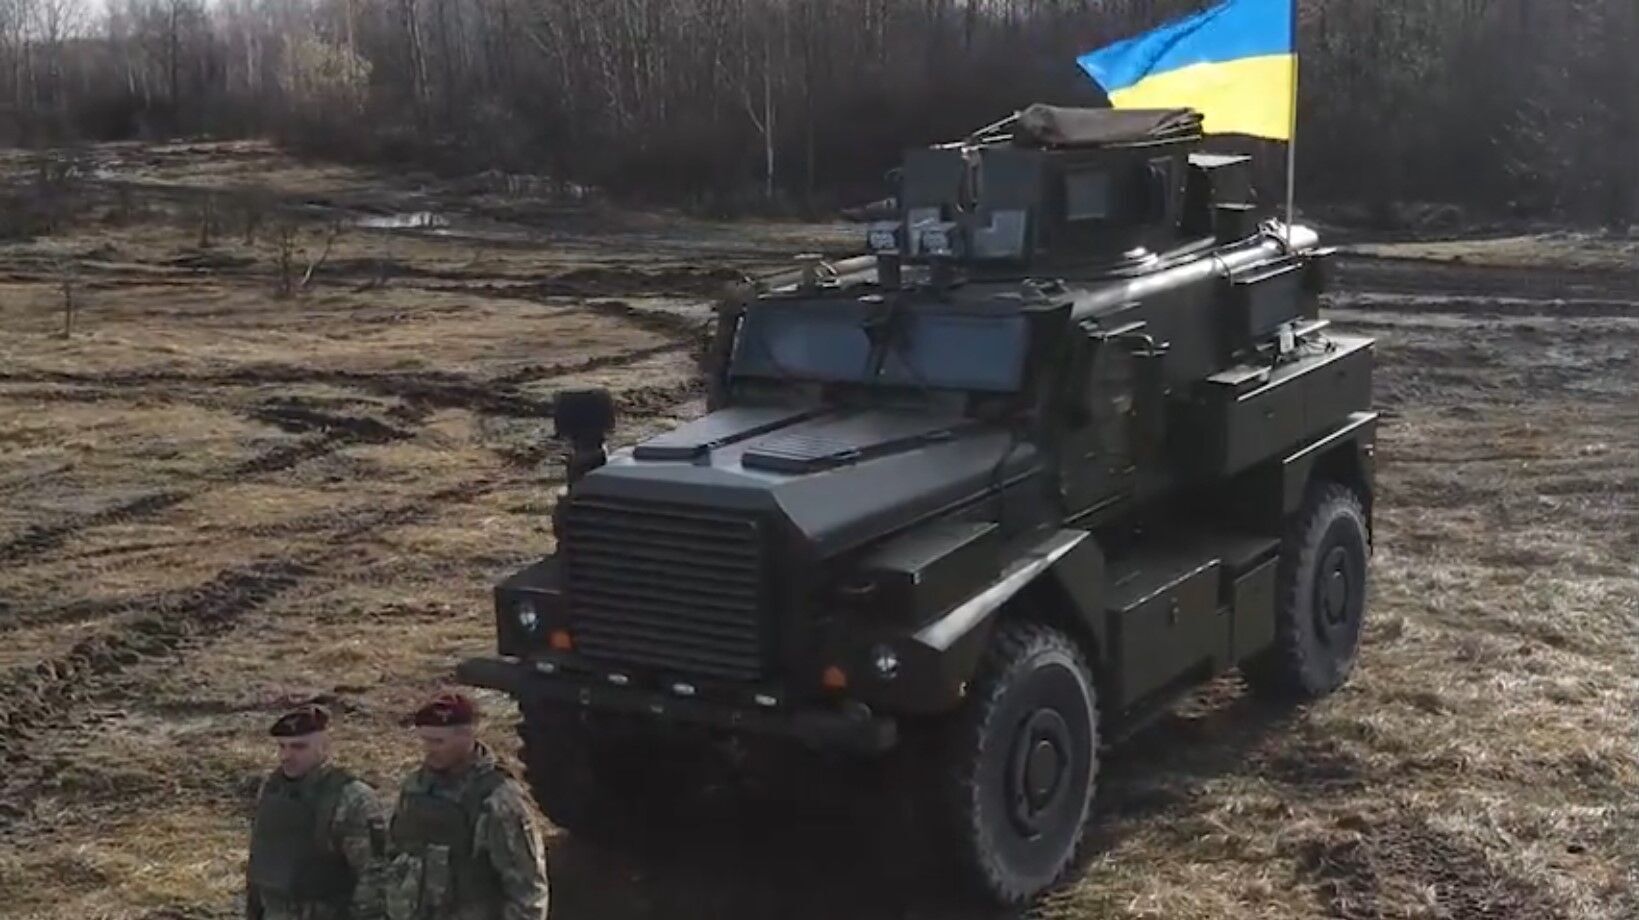 Резніков з українськими десантниками "обкатали" чергову партію західної військової техніки: Strykers і Cougars у вправних руках. Відео